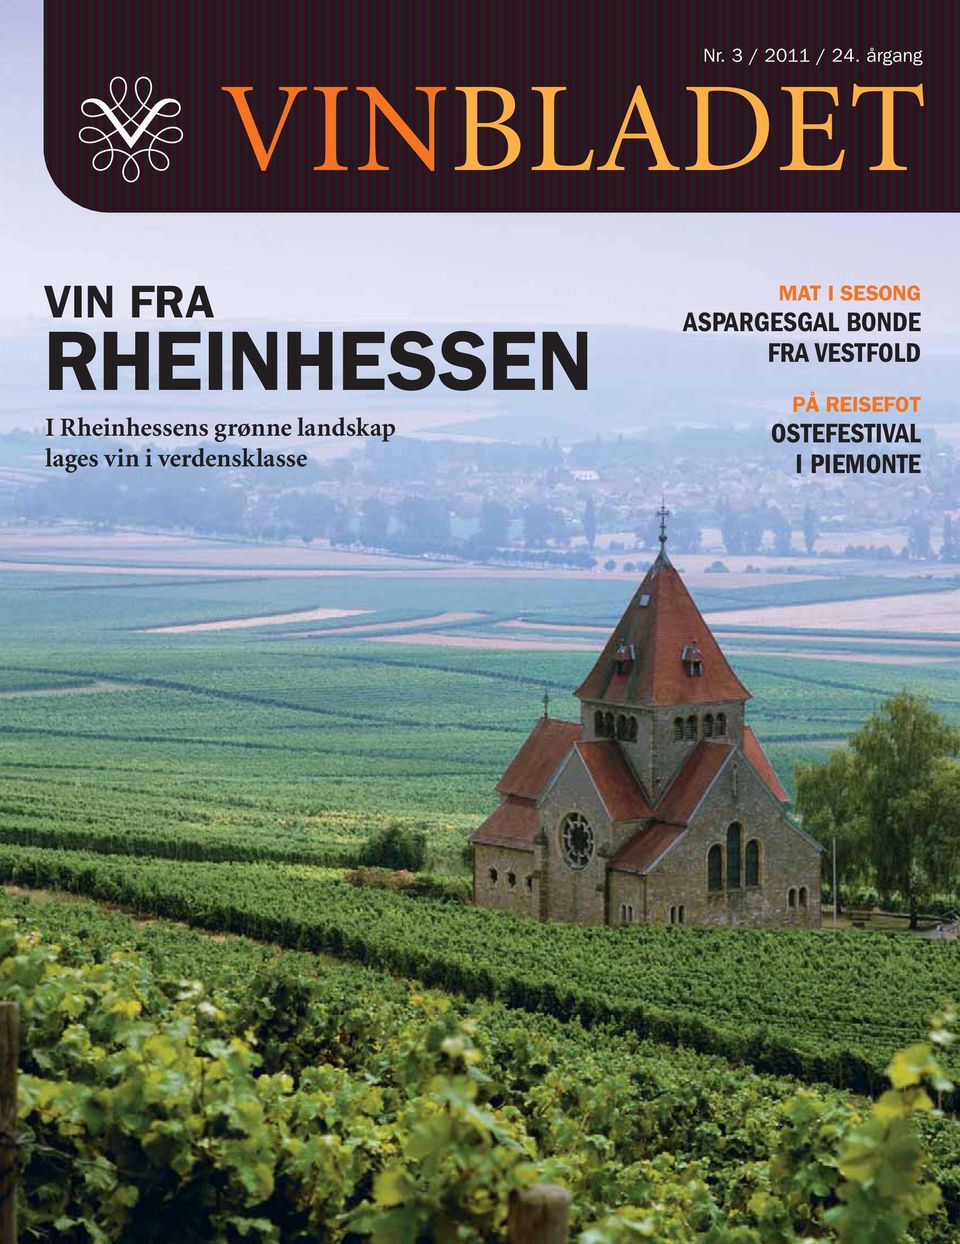 Rheinhessens grønne landskap lages vin i